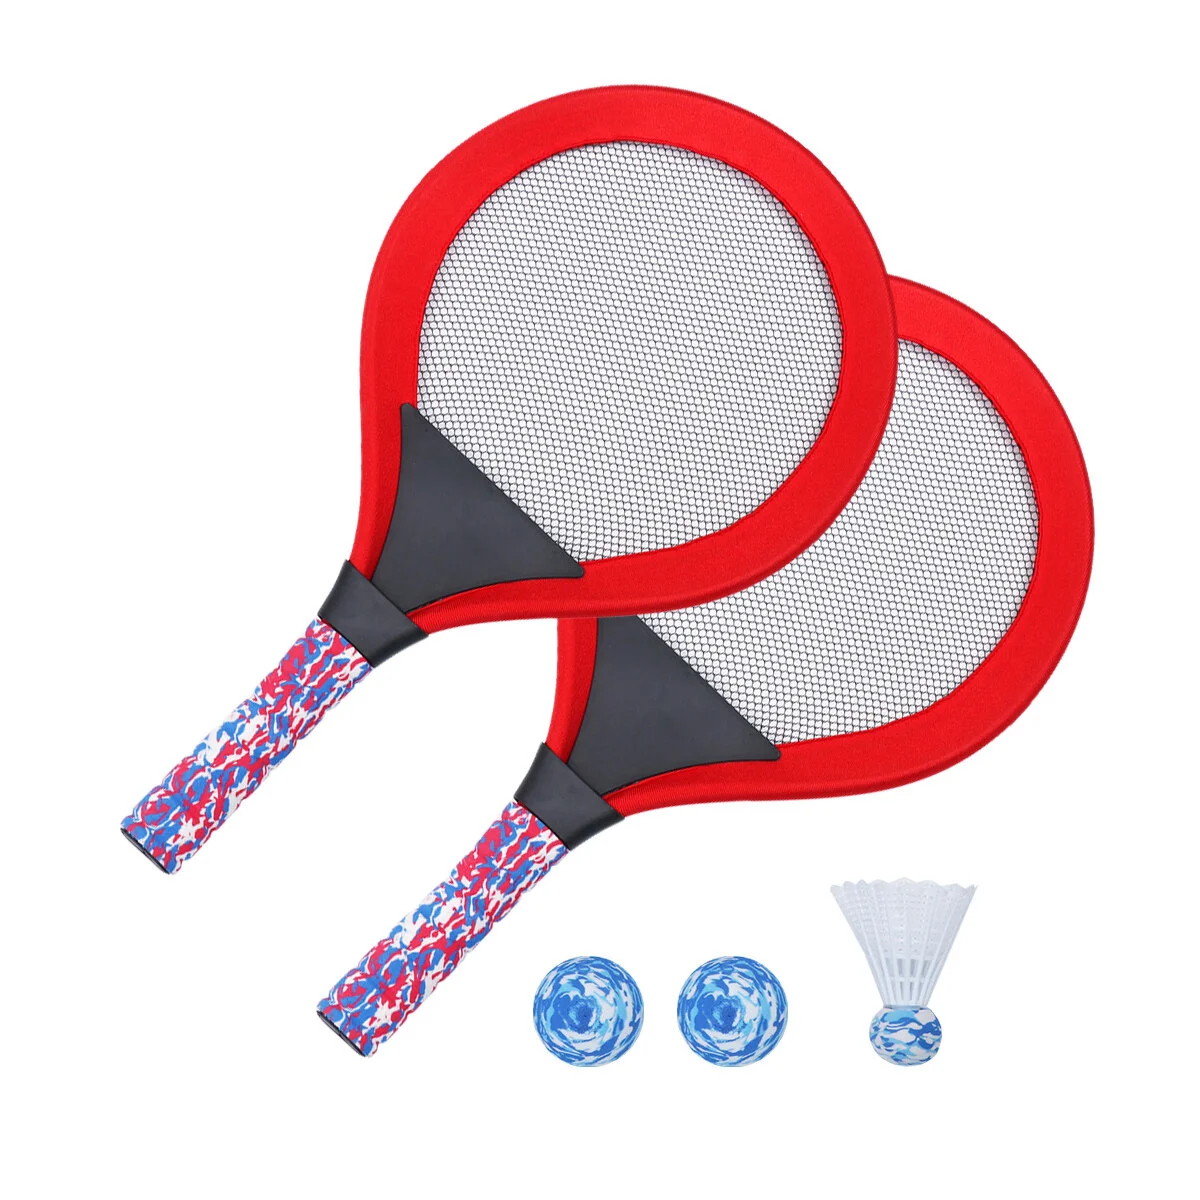 

Комплект детских теннисных ракеток, теннисные ракетки для малышей или детей (Возраст 3- 5 лет), уличные виды спорта, упаковка